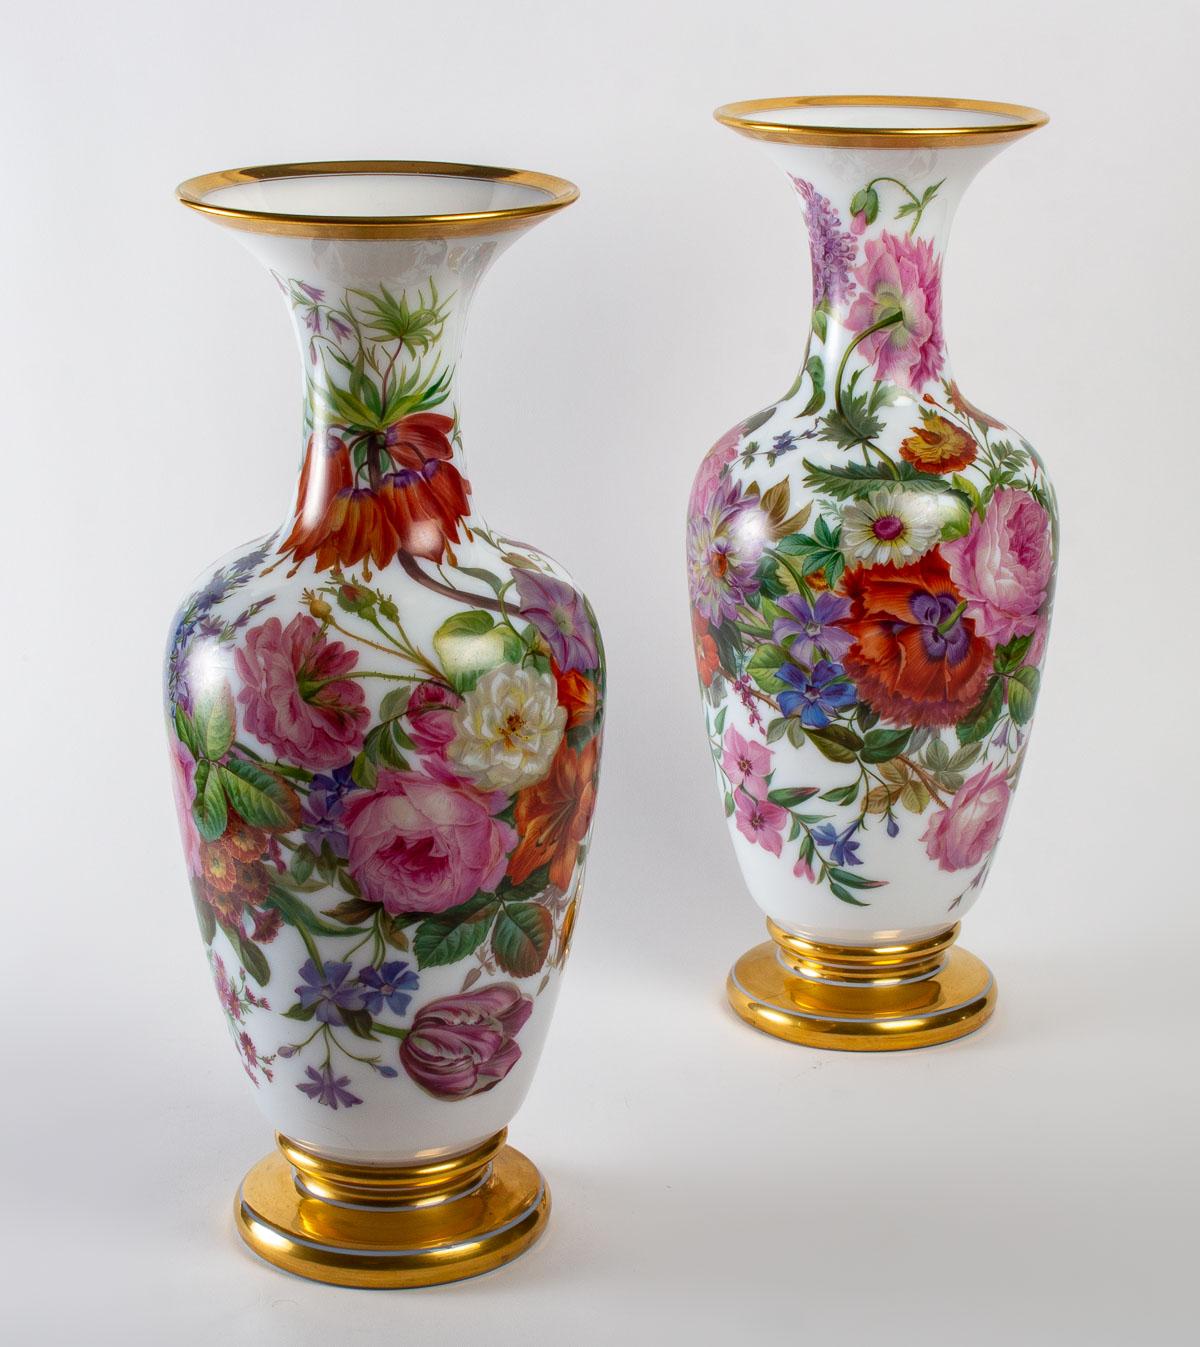 A pair of Baccarat opaline vases, 19th century, 1840-1860.
Measures: H: 50 cm, D: 22 cm.